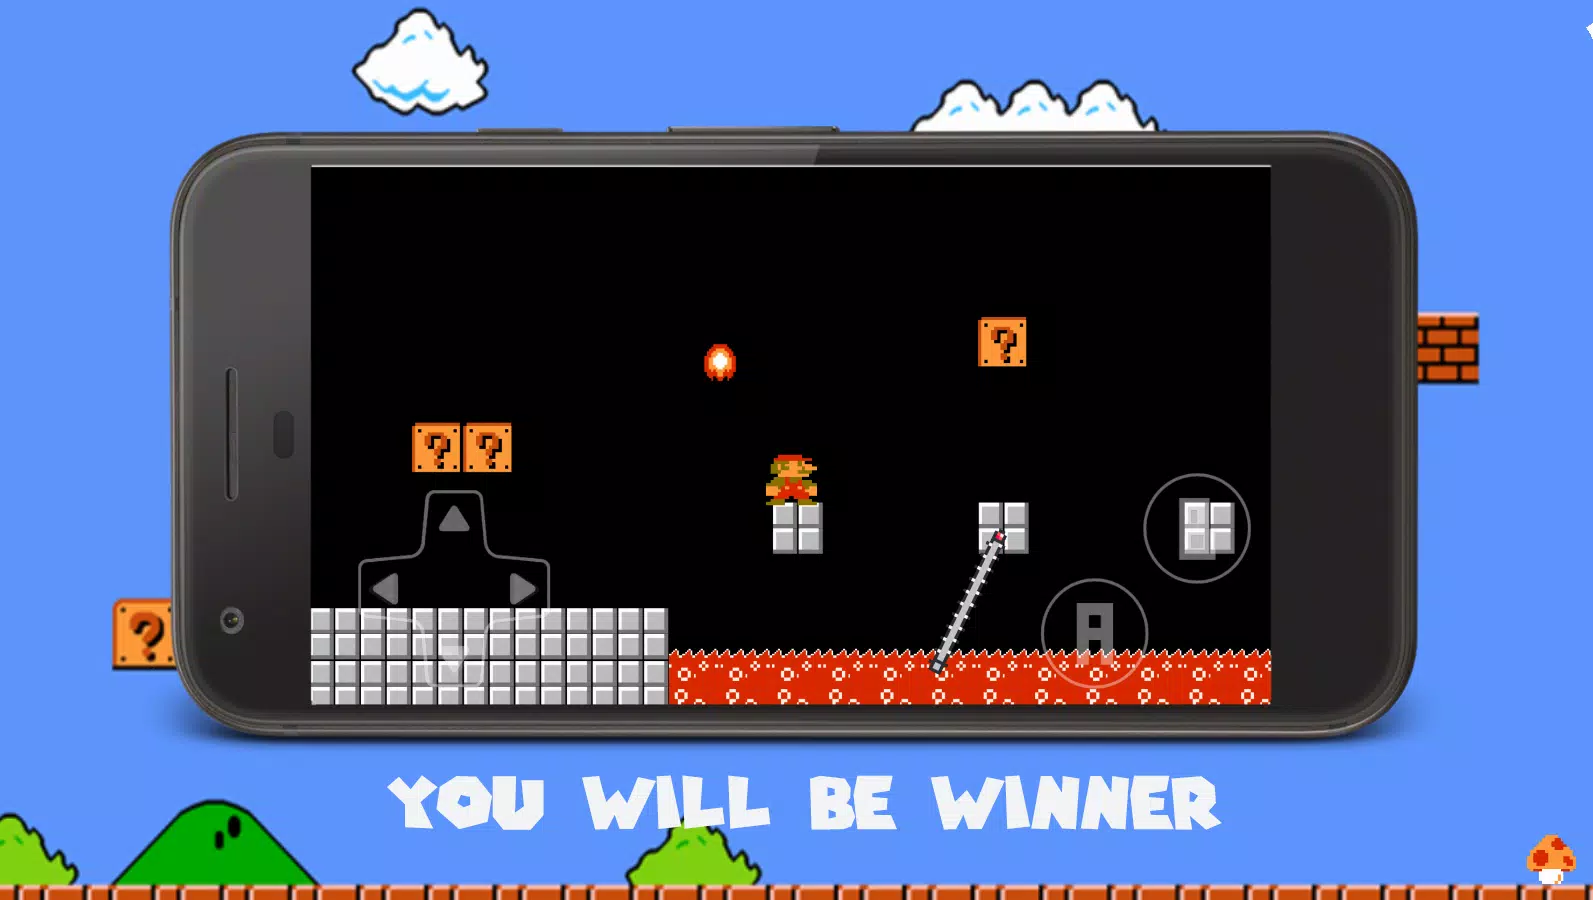 Super Mario Bros APK para Android - Download